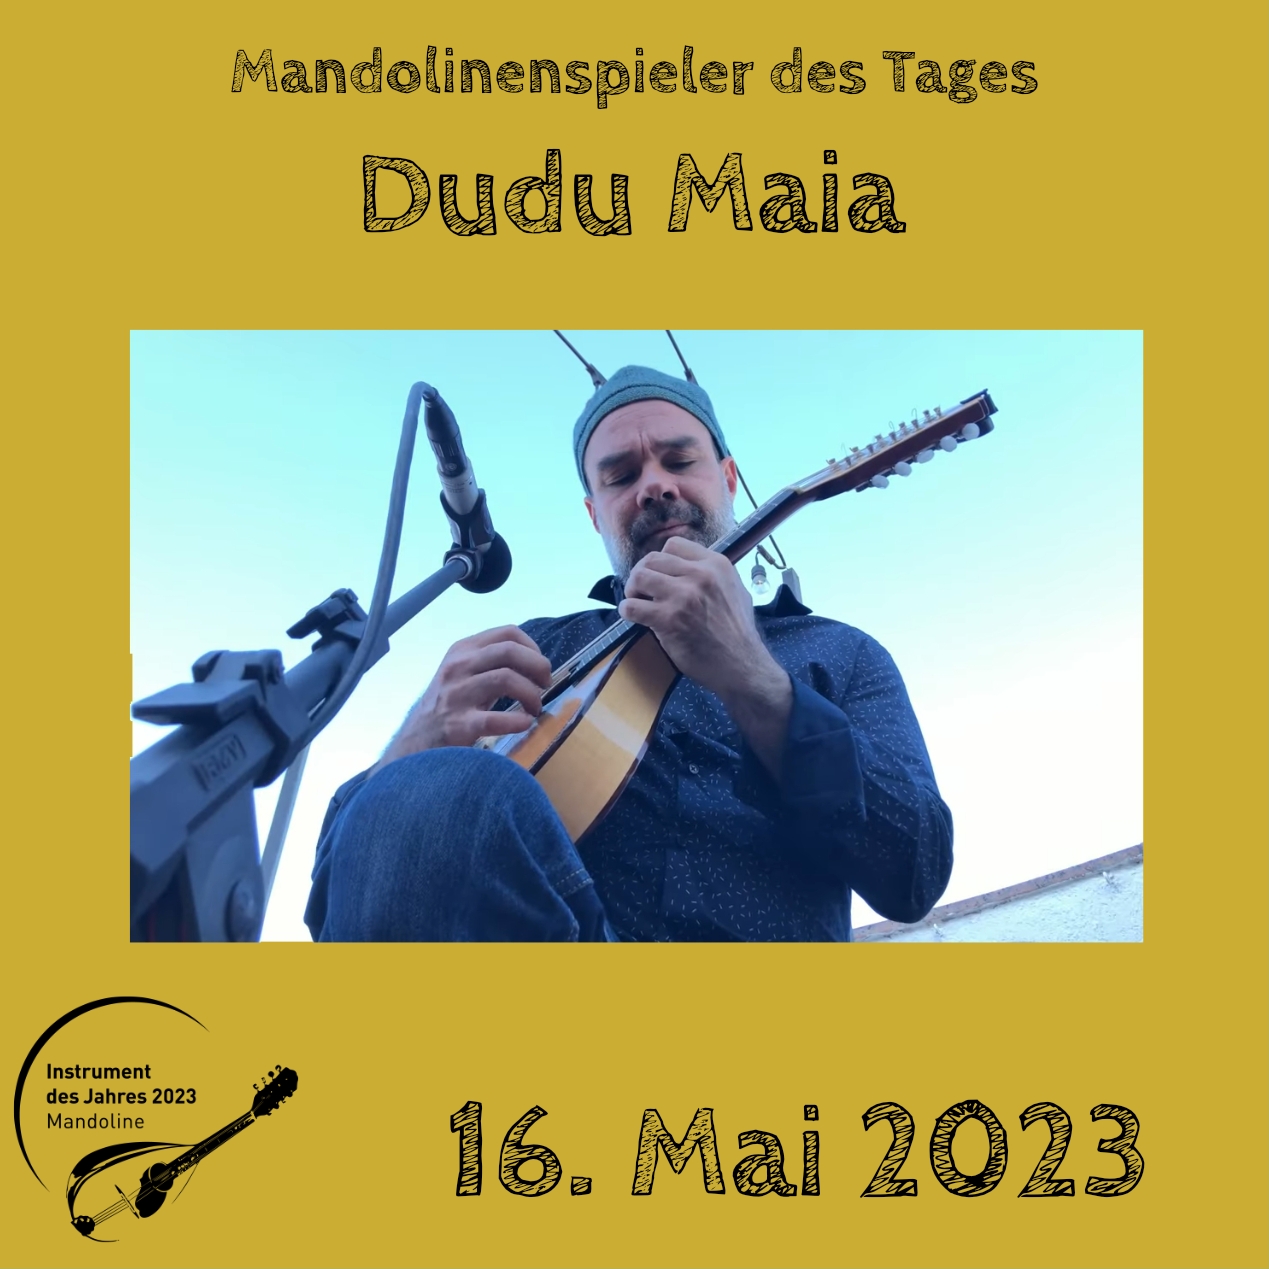 Dudu Maia Mandoline Instrument des Jahres 2023 Mandolinenspieler Mandolinenspielerin des Tages